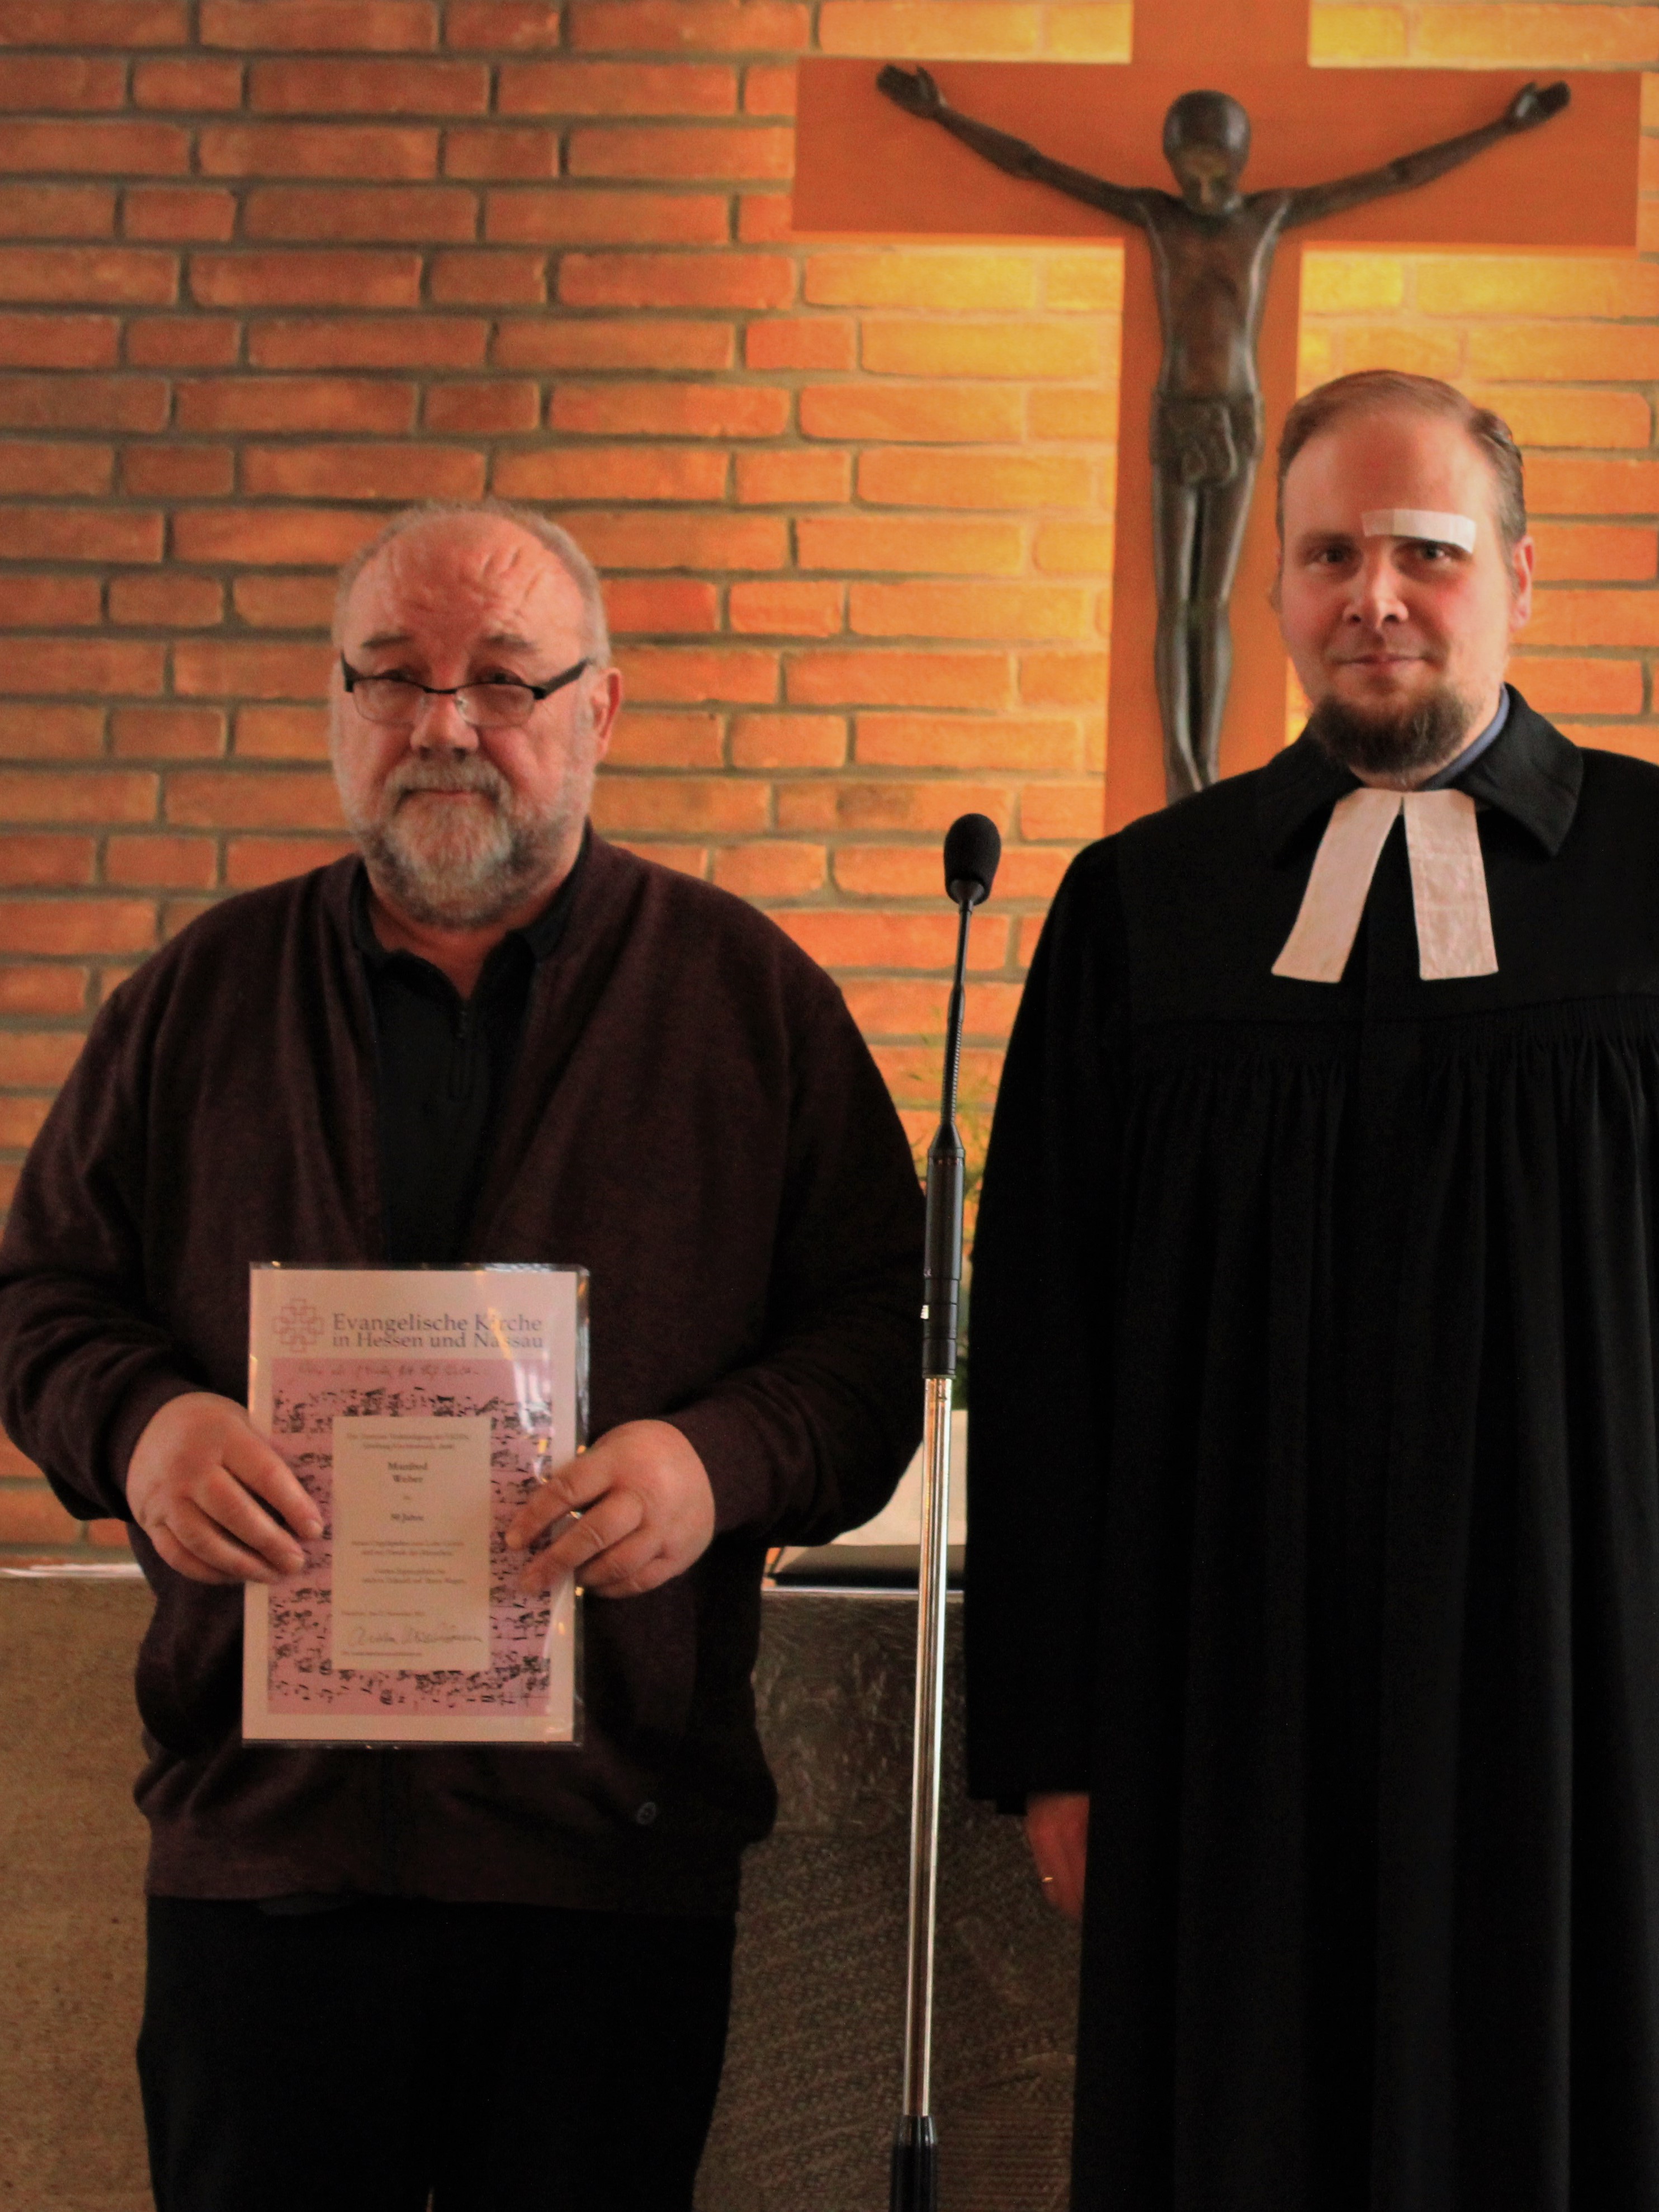 Bild von M. Weber der von Pfarrer Heinz eine Urkunde überreicht bekommt.